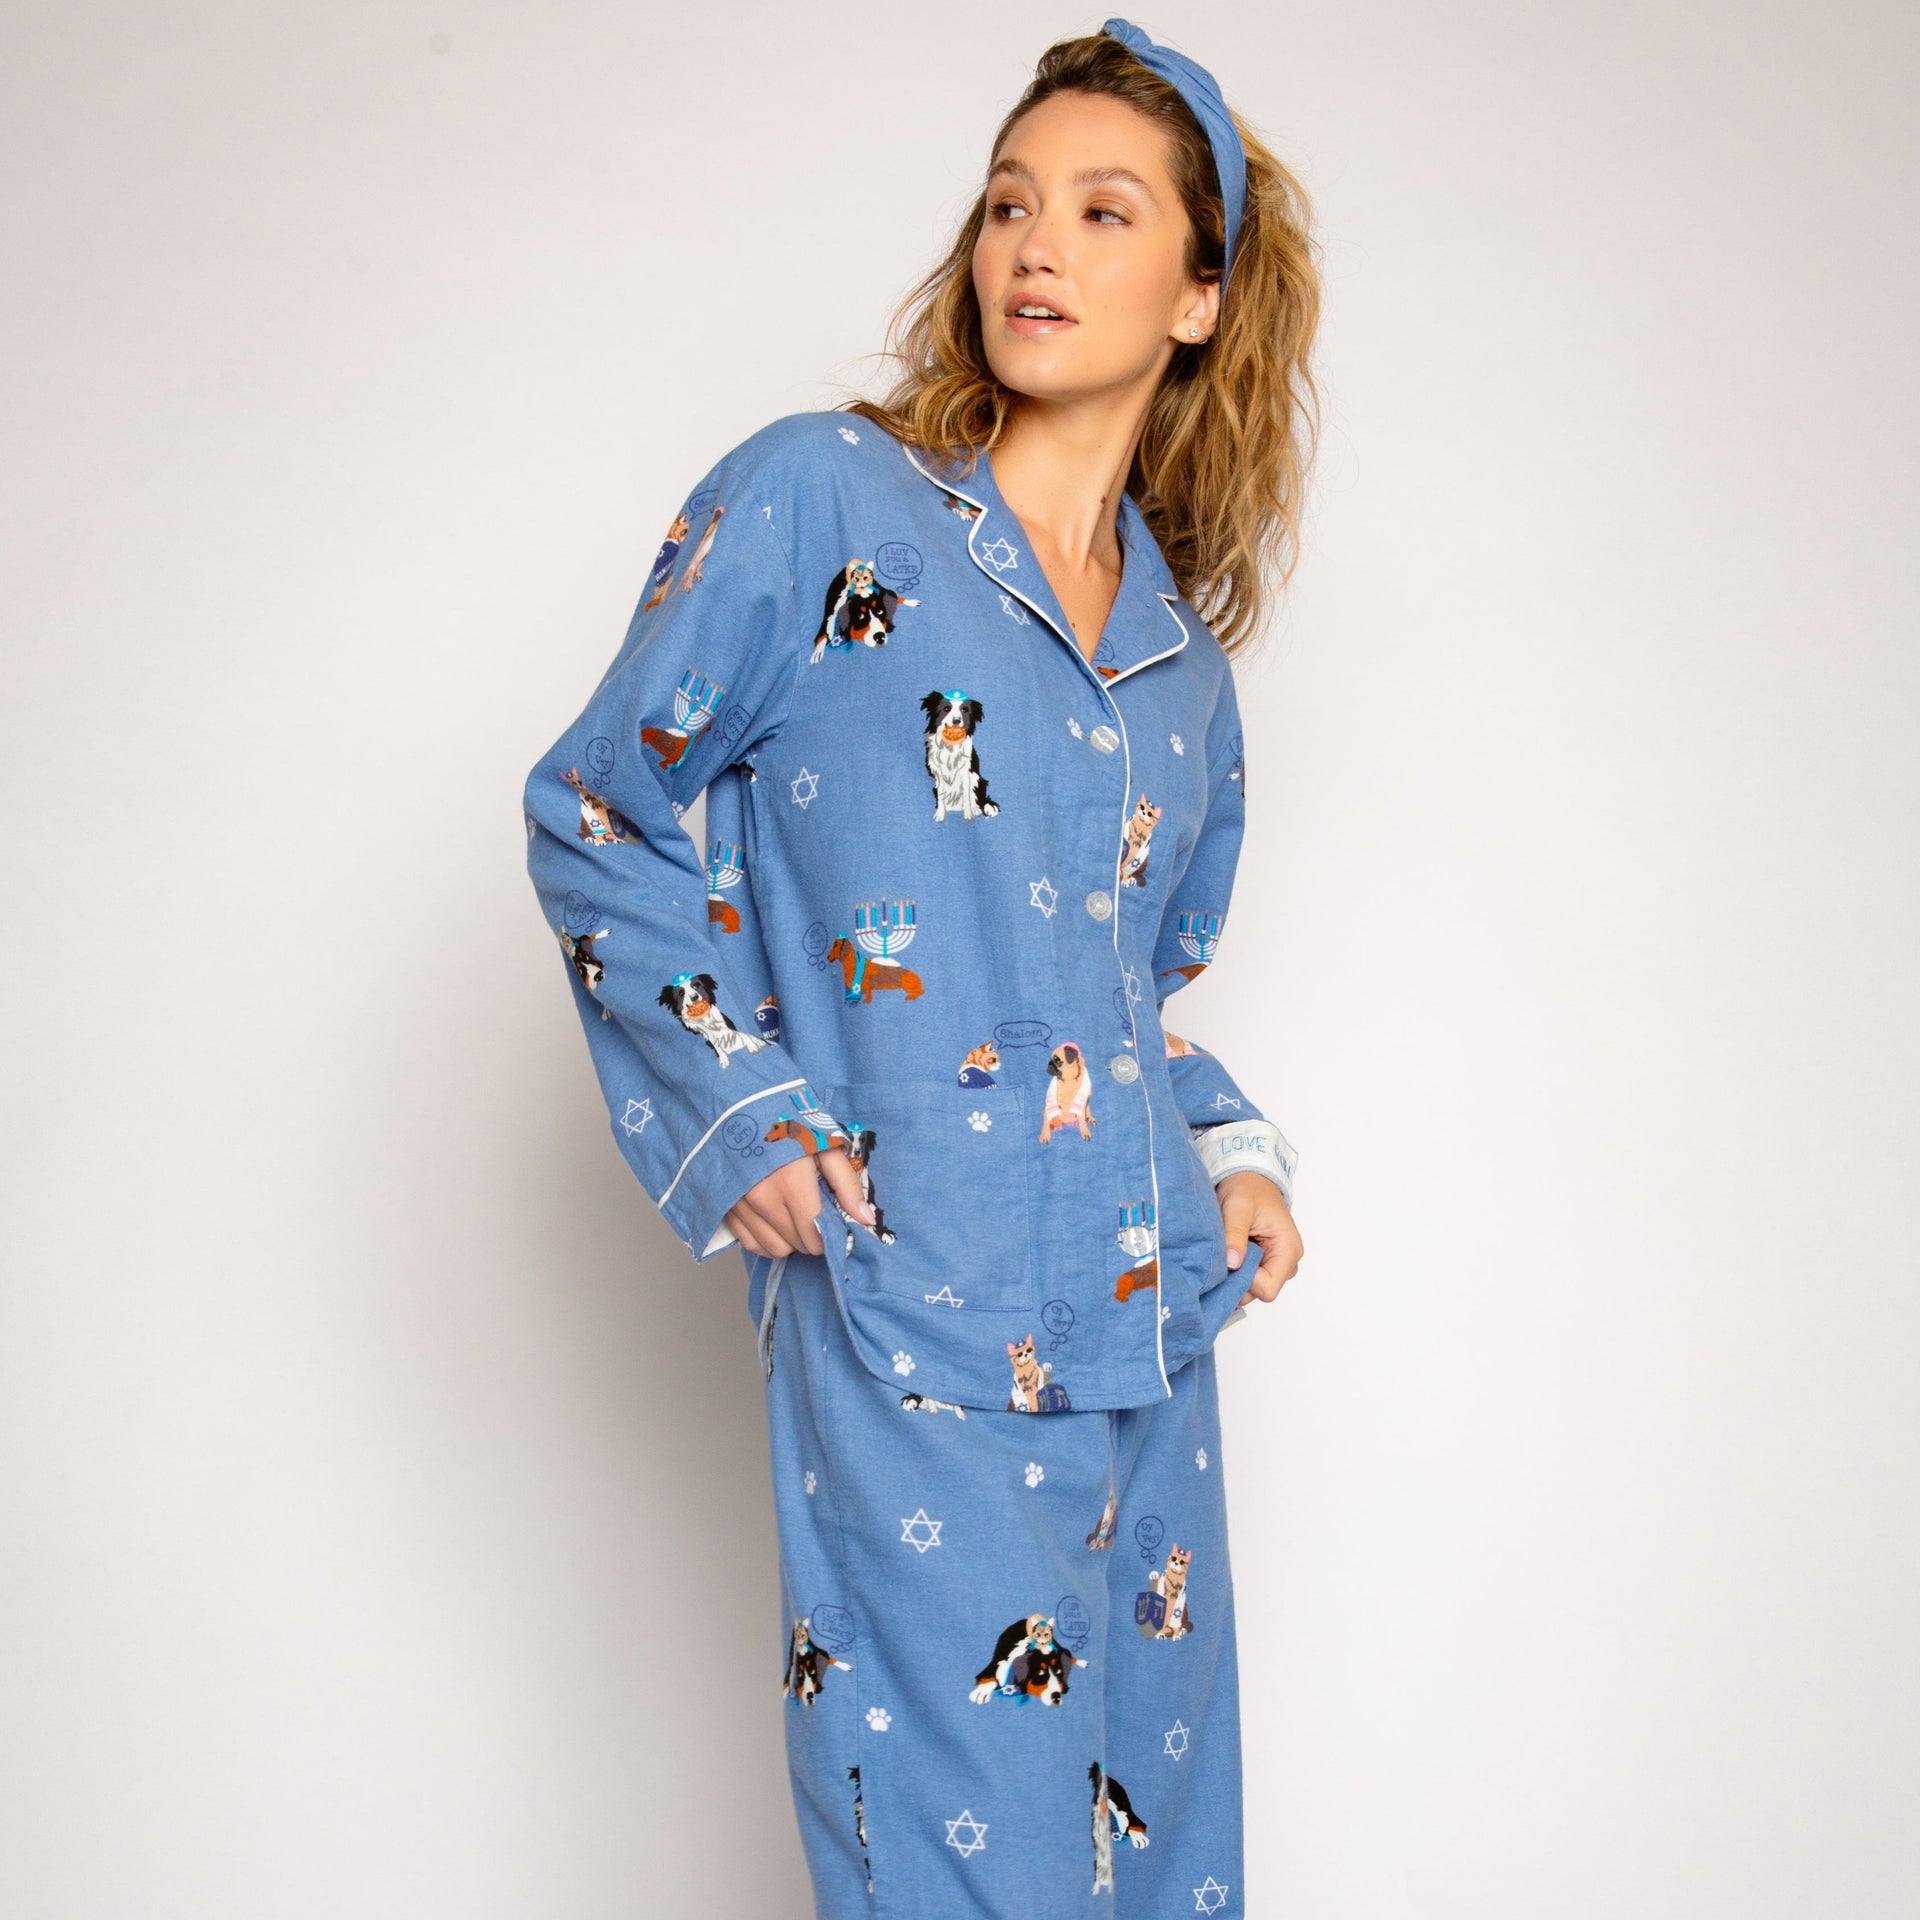 PJ Salvage Pajamas Love You A Latke Pajamas Set by P.J. Salvage - Women